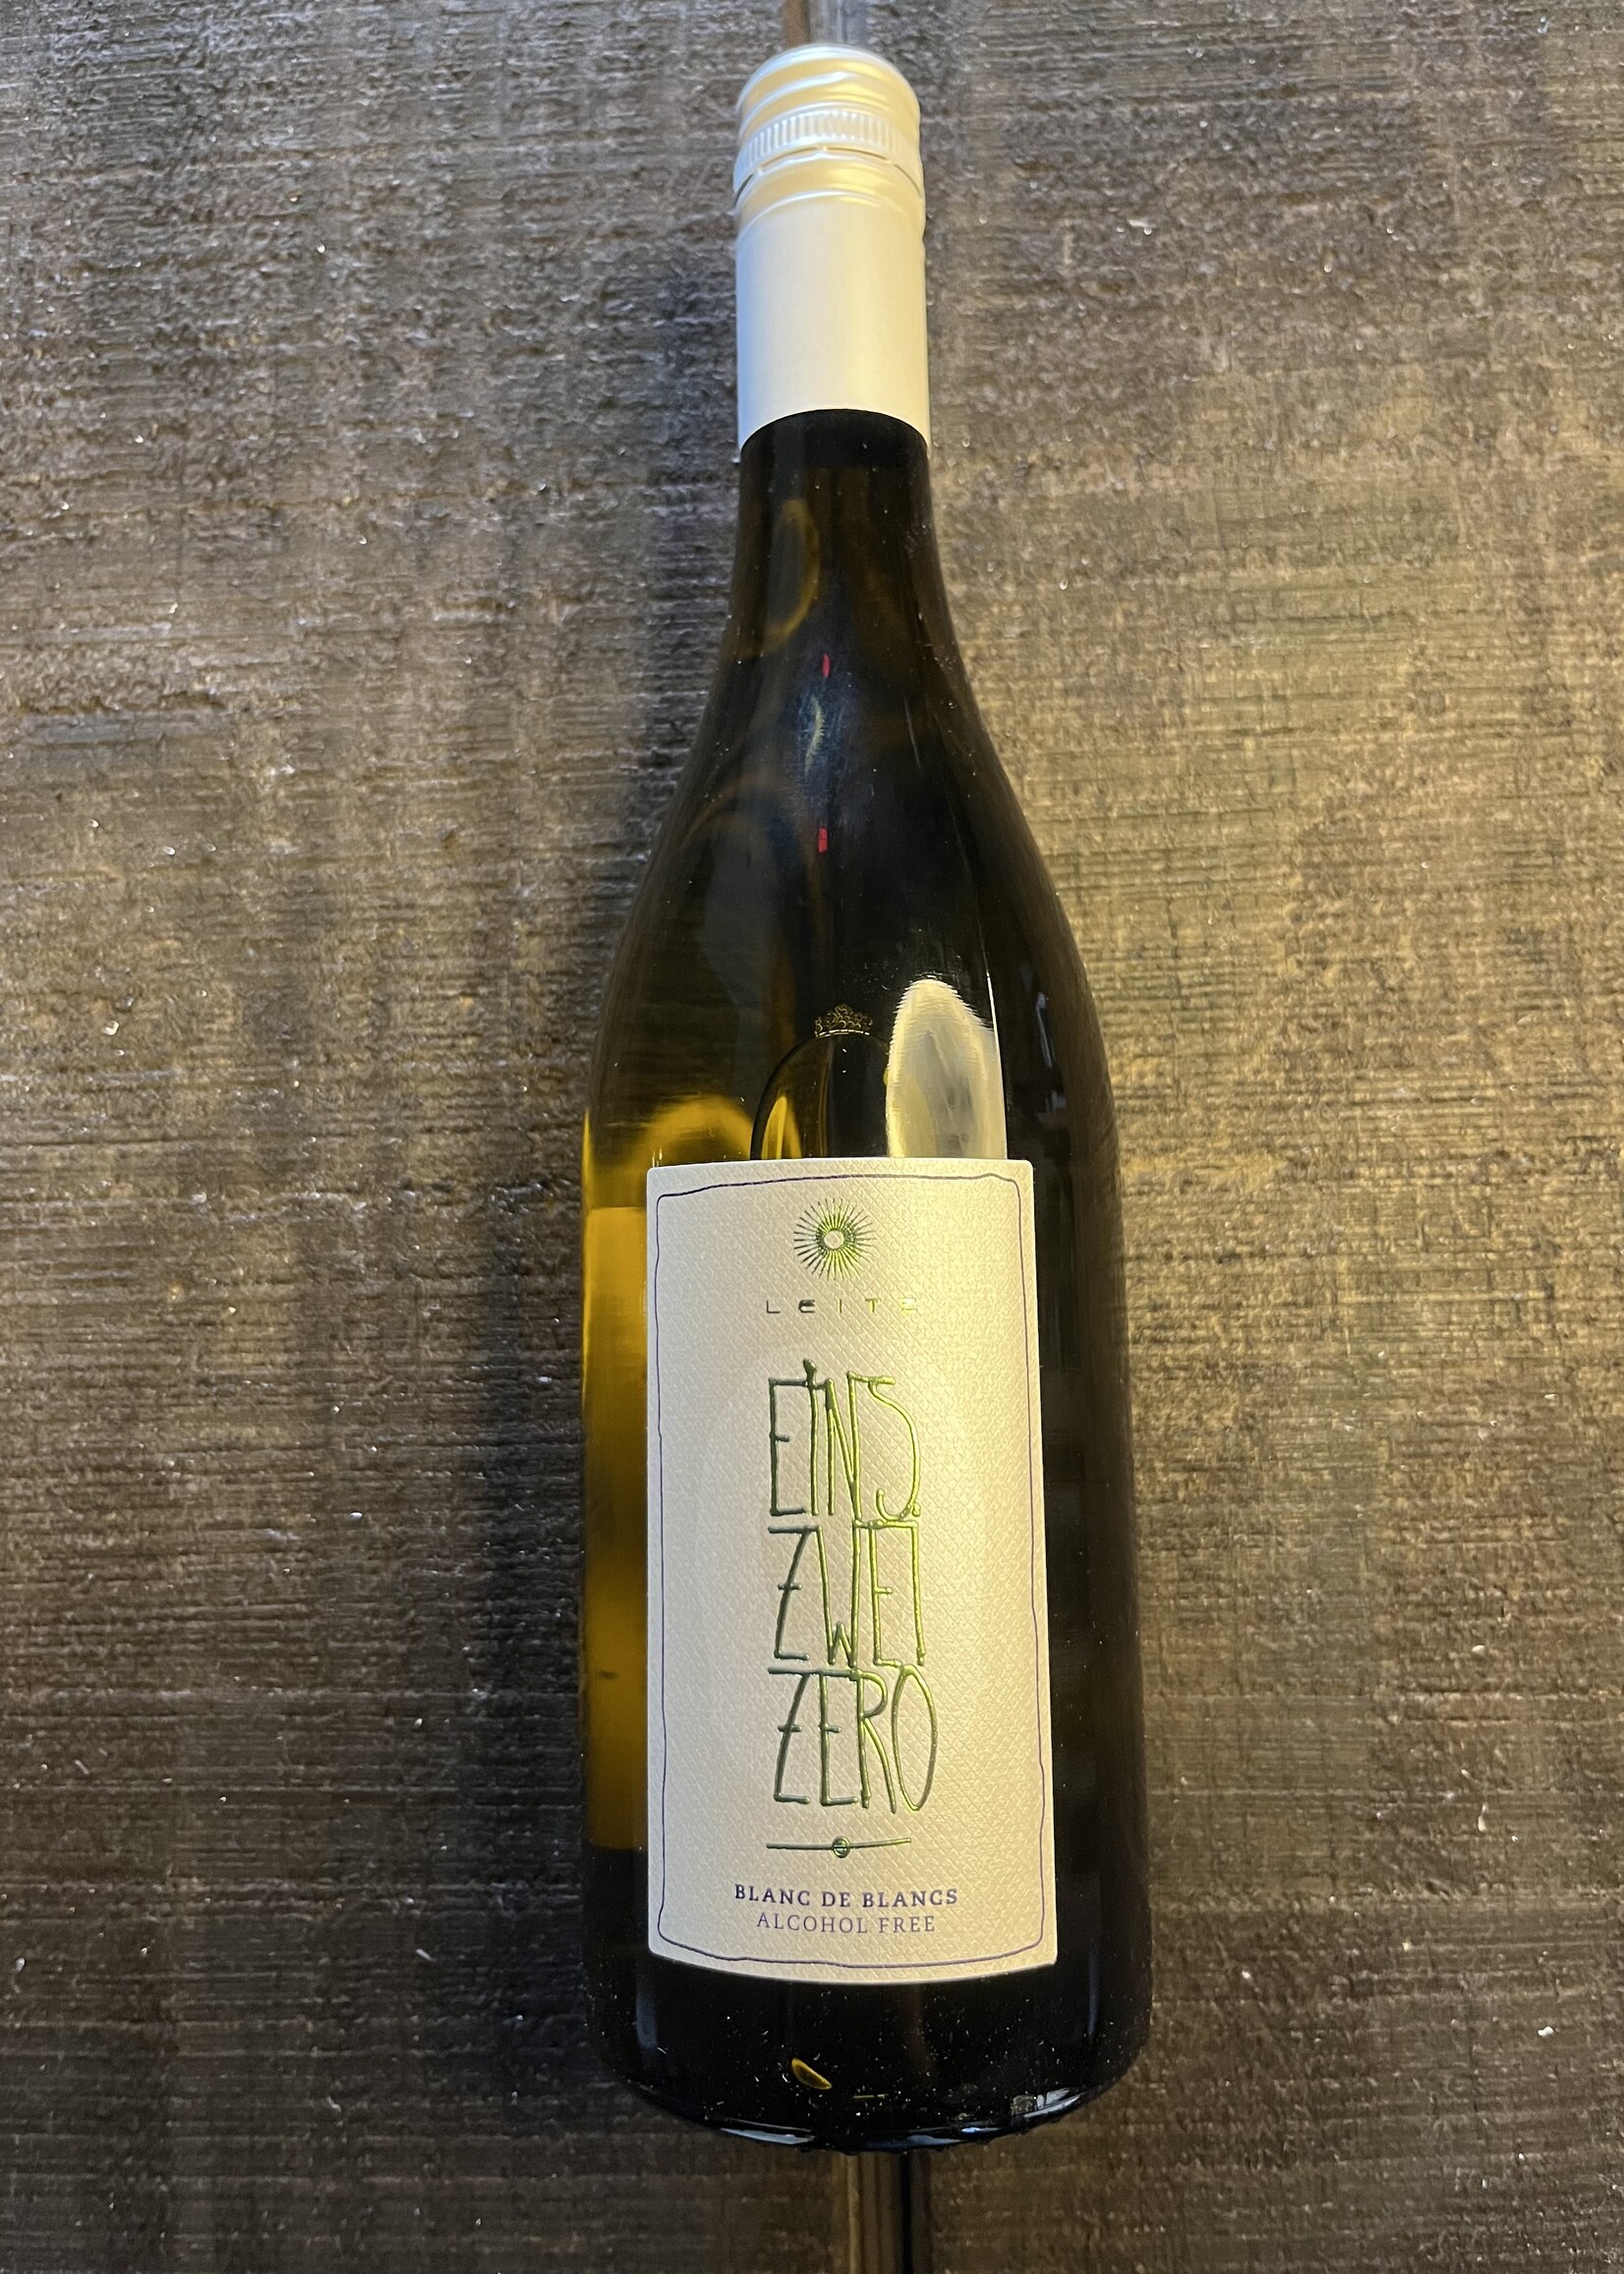 Leitz Einz Zwei Zero Blanc de Blancs Dealcoholized Wine